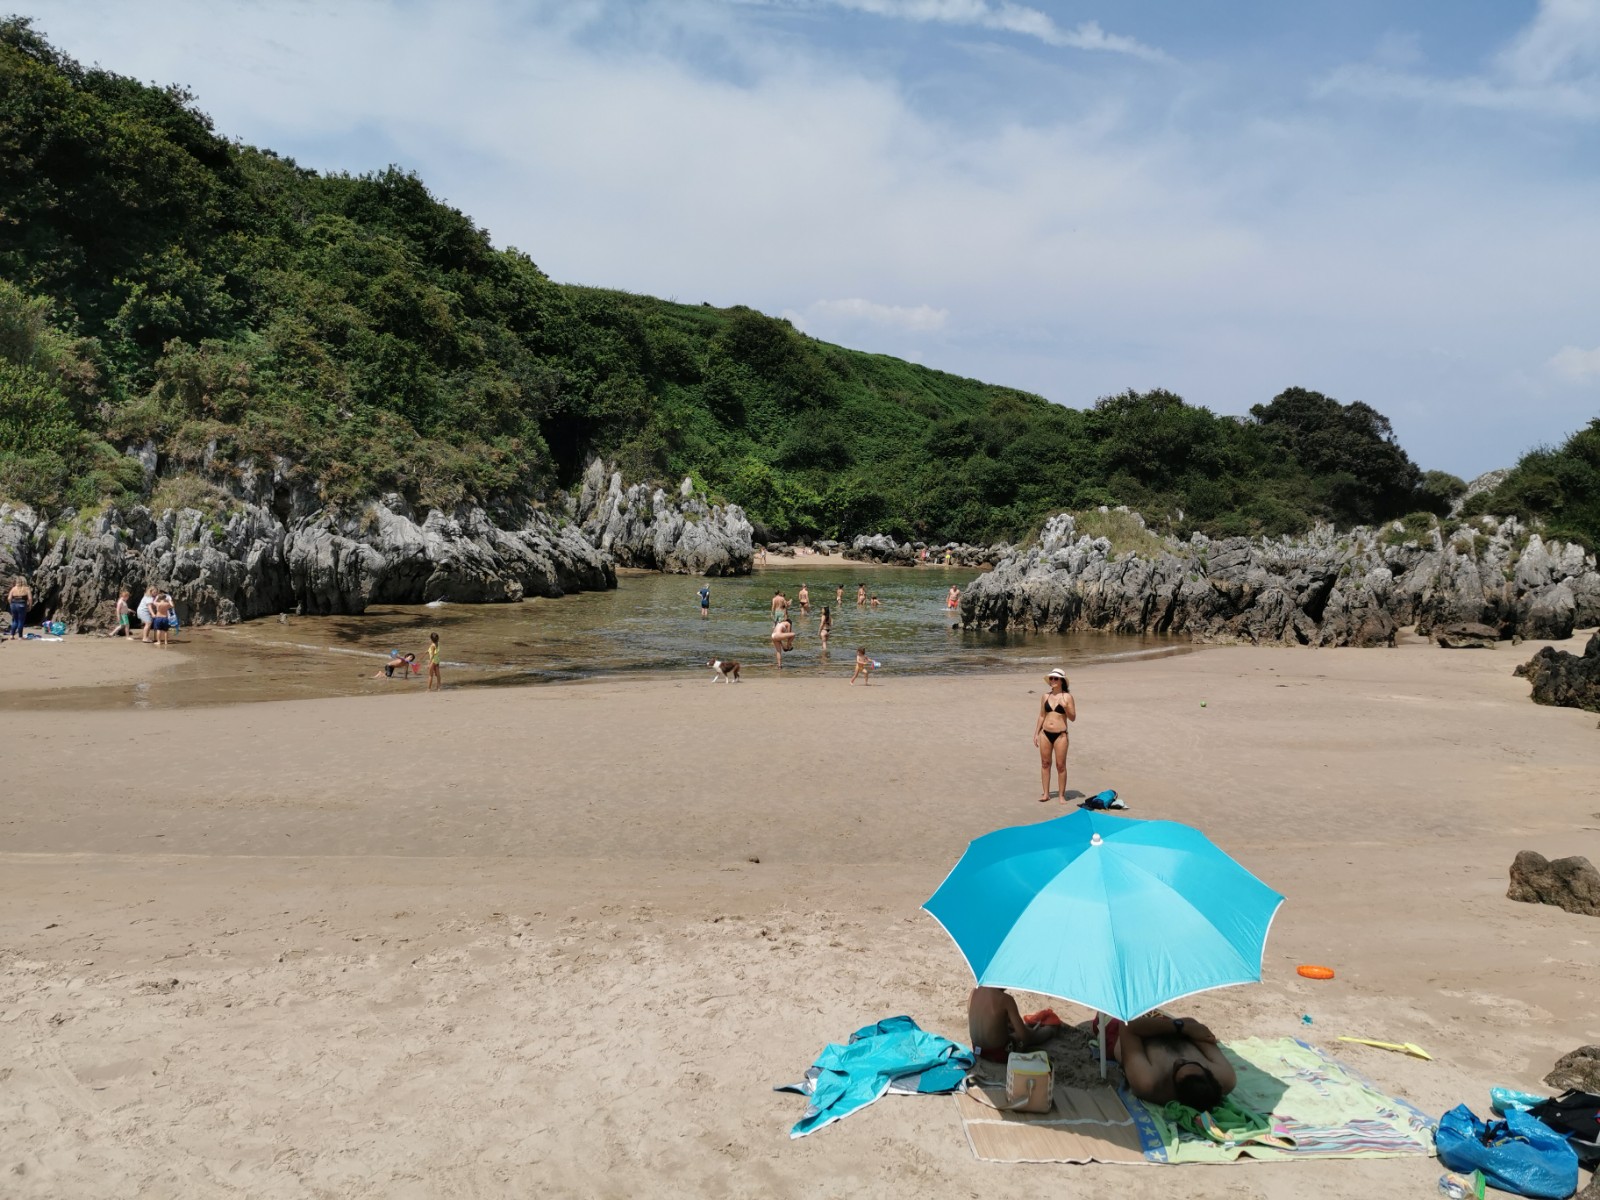 普雷莱索海滩的照片 带有碧绿色纯水表面